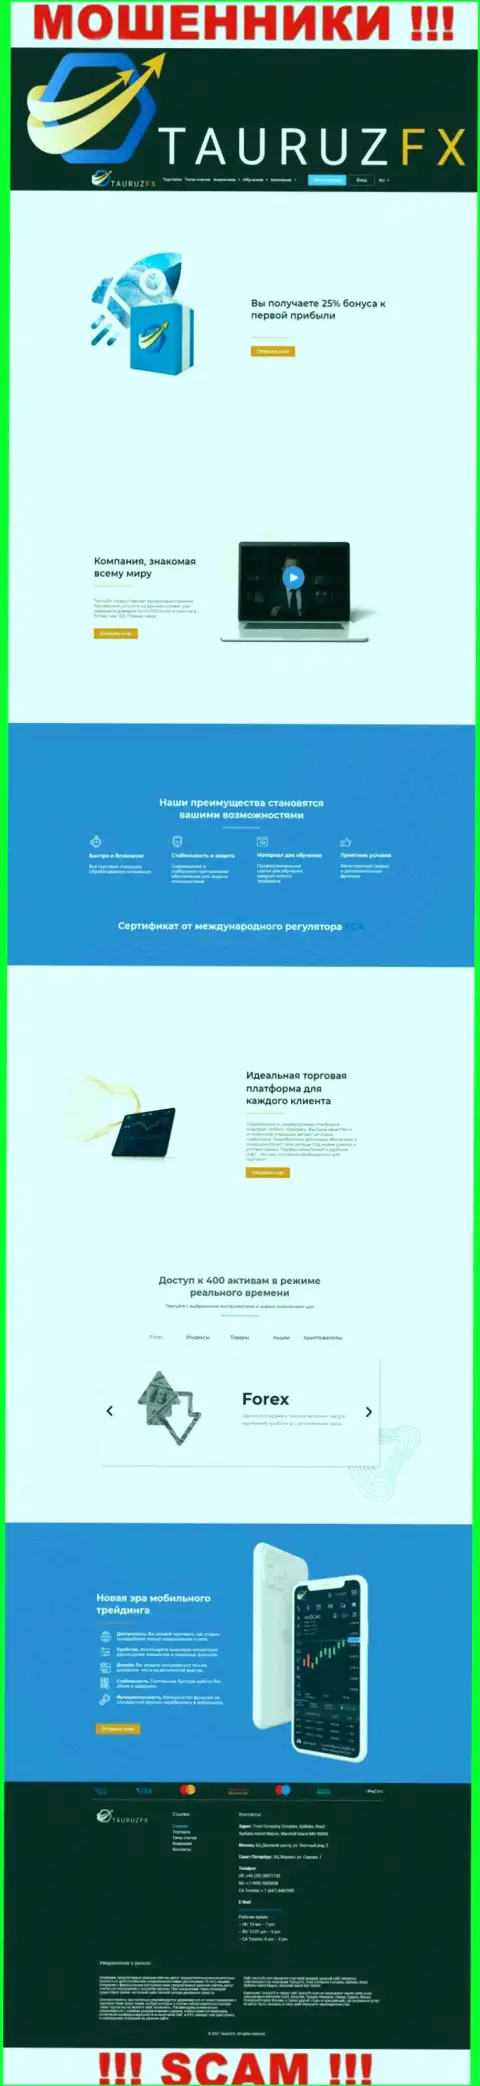 Информационный сервис компании ТаурузФХ Ком, заполненный липовой инфой